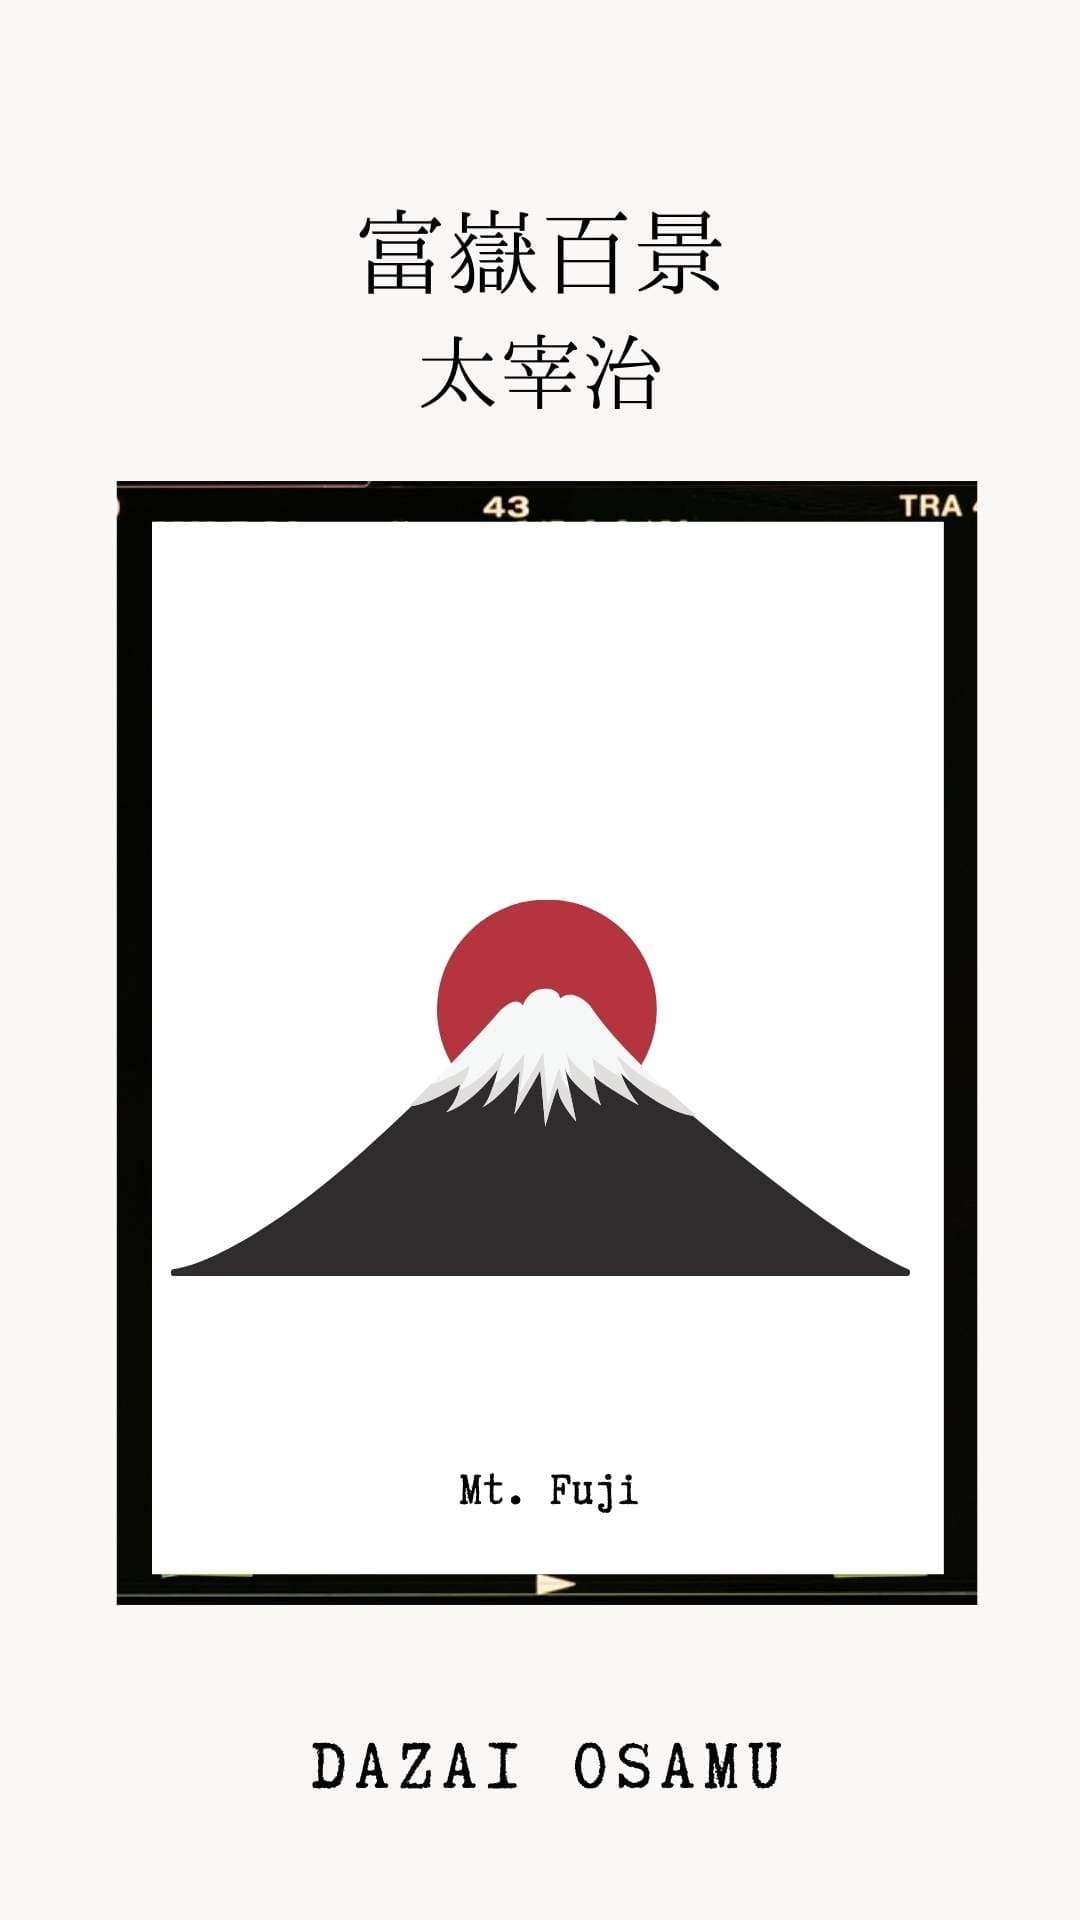 太宰治, 富嶽百景, Dazai Osamu, Mt. Fuji. Maplopo